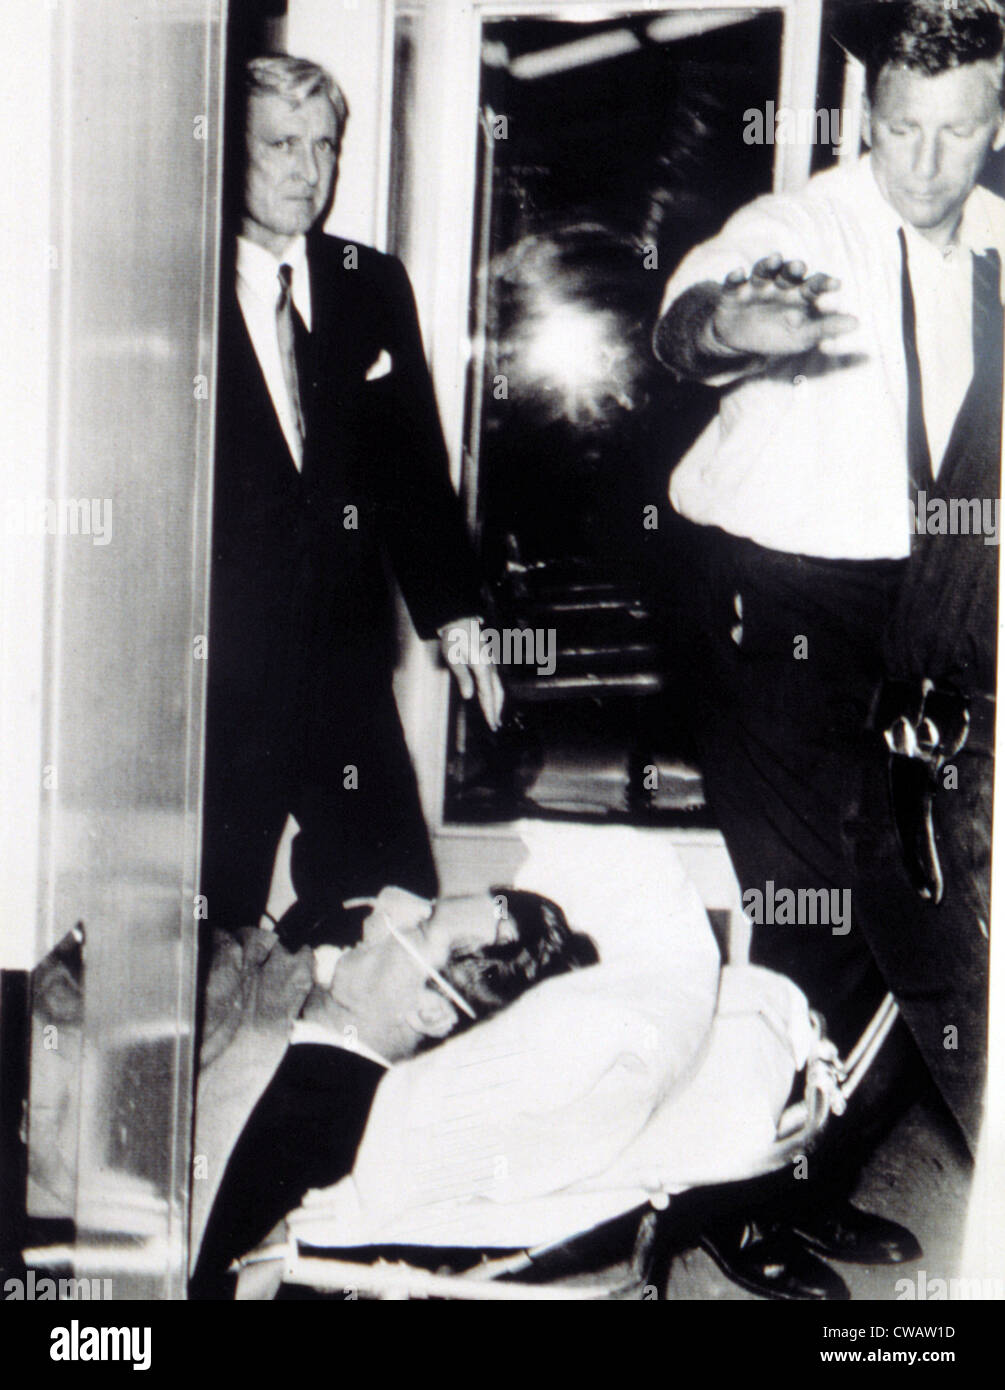 ROBERT KENNEDY, transportado al hospital después de ser baleado, 5 de junio de 1968. Cortesía: CSU Archives / Everett Collection Foto de stock